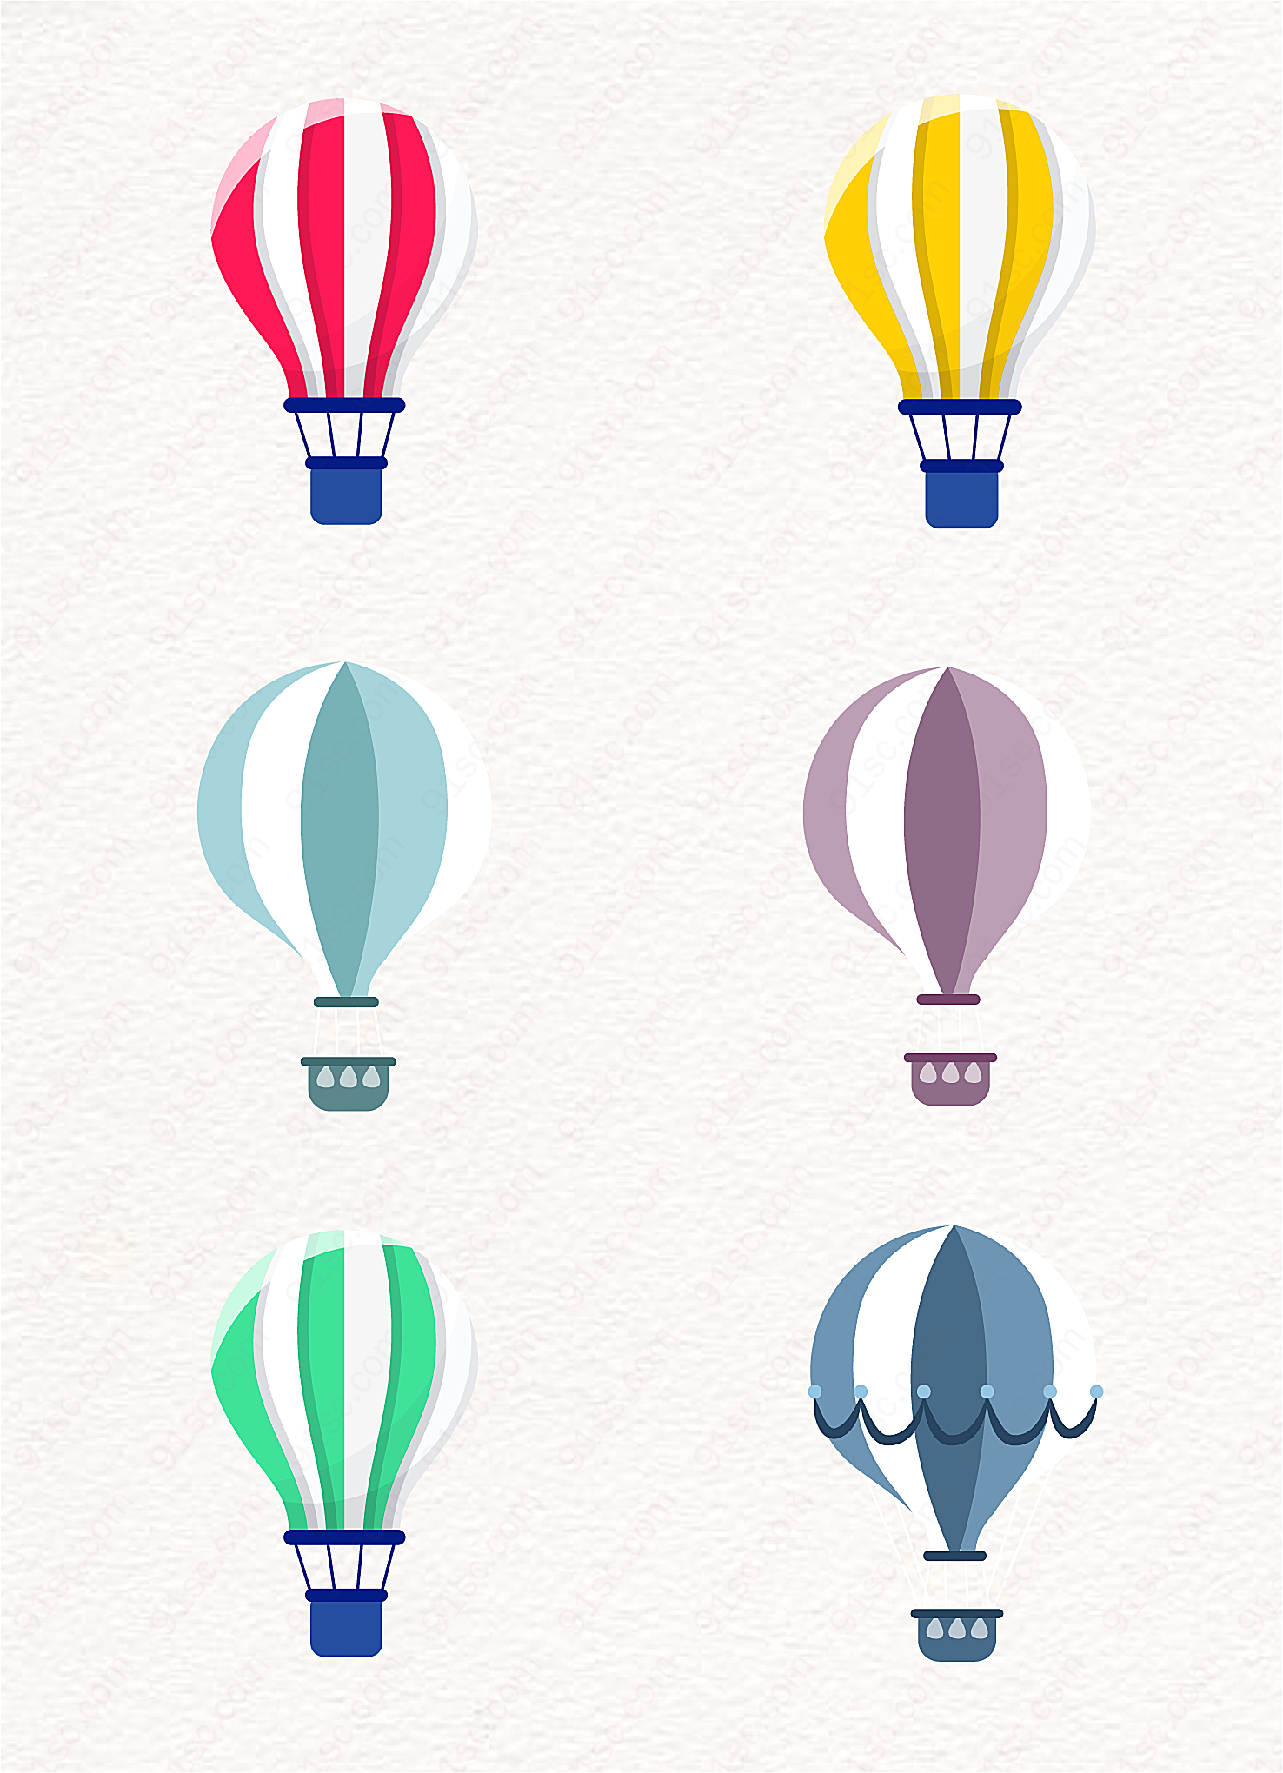 手绘相间色热气球元素设计素材